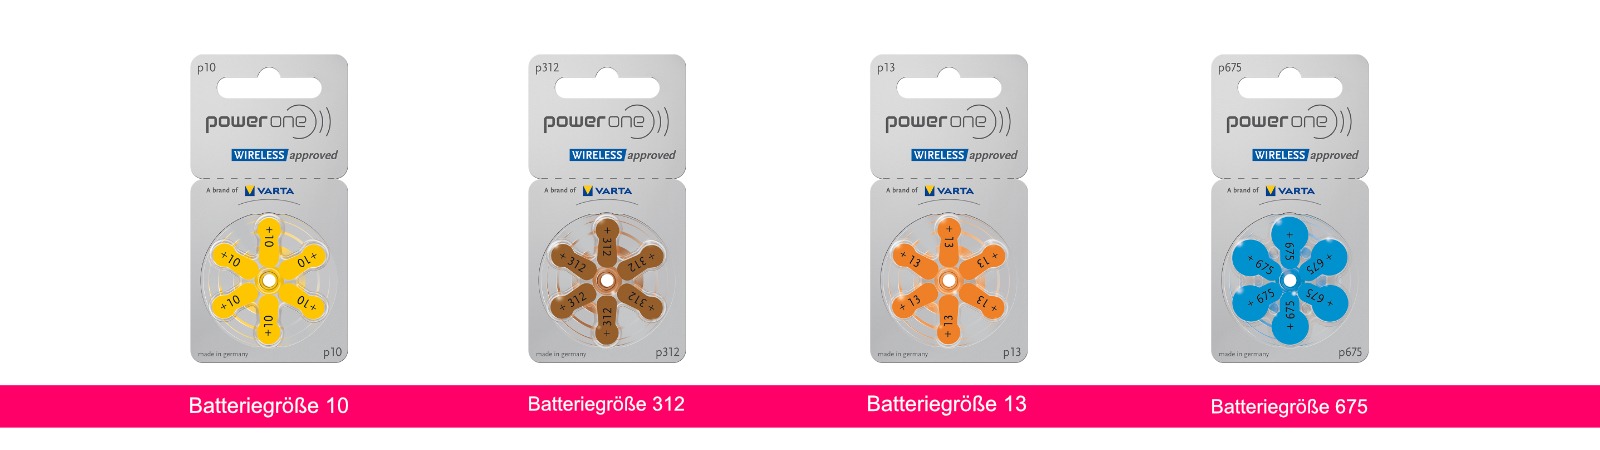 <p>Im Bild zu sehen sind folgende Batterien von links nach rechts: 675er / 13er /  312er / 10er</p>
